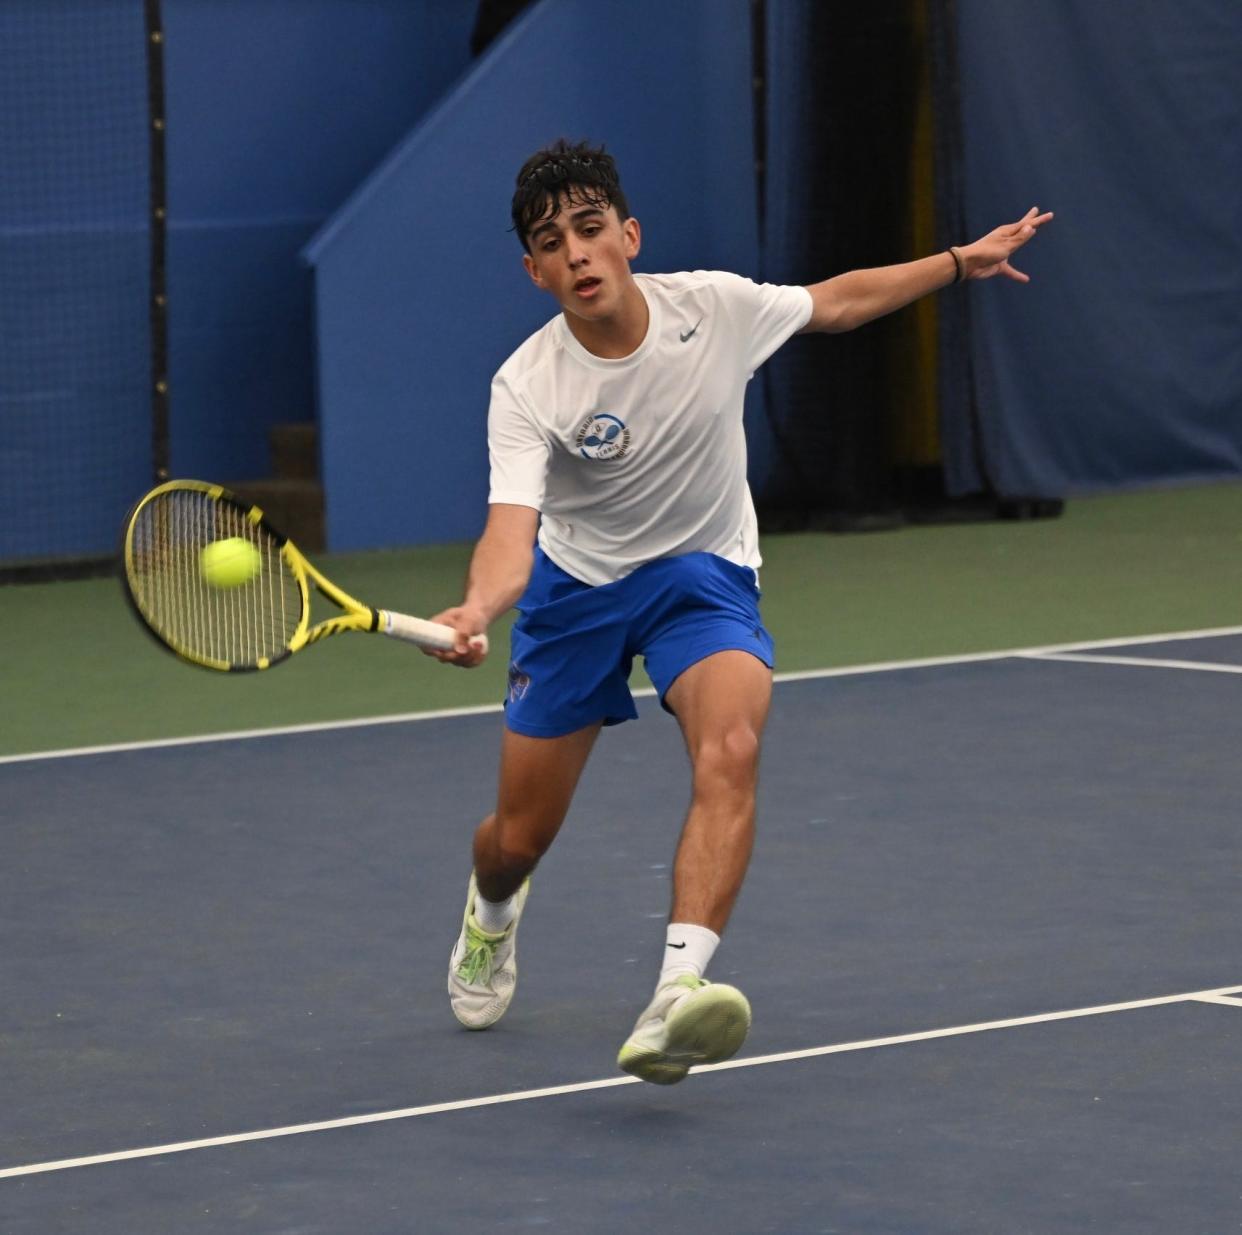 Ontario sophomore Hector Sanchez Vidal won No. 2 singles.